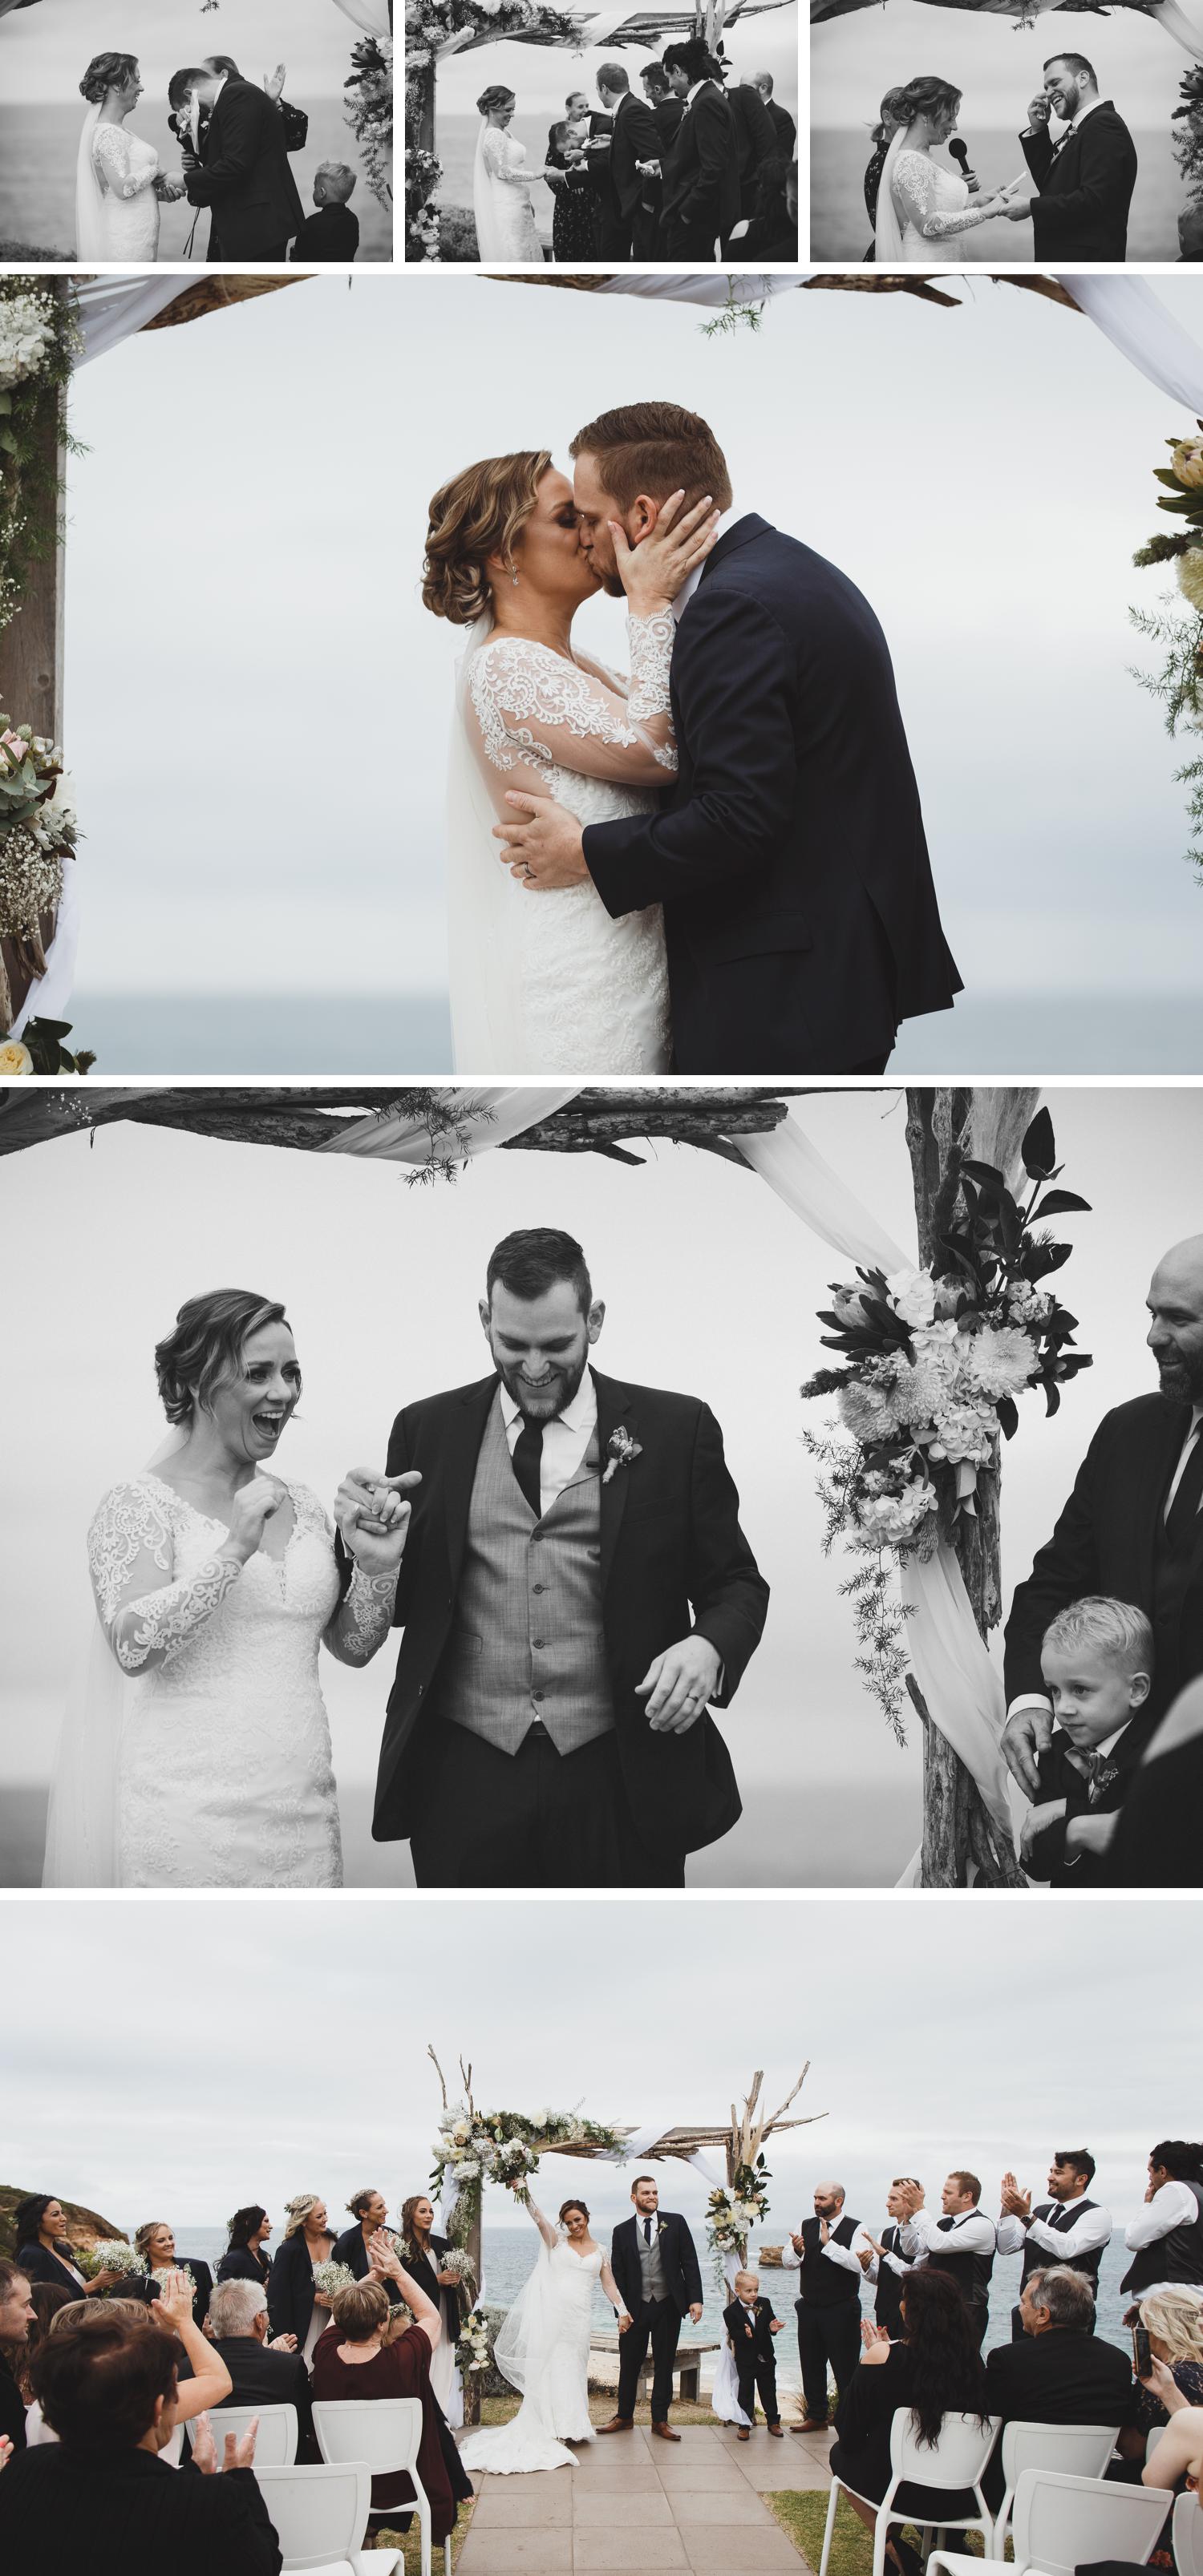 All Smiles Sorrento, Mornington Peninsula Wedding Photography, Videography by Danae Studios